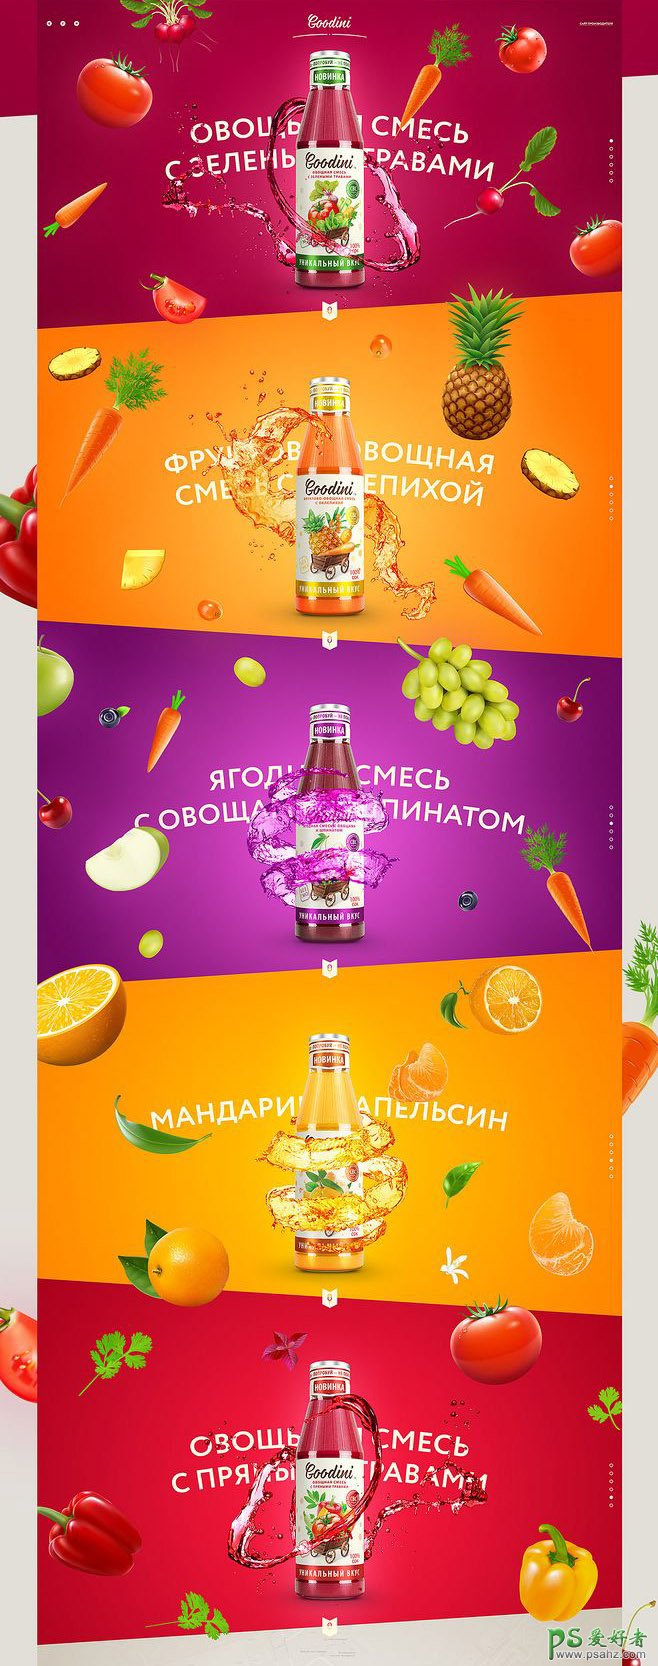 看见就想喝的饮料宣传广告设计图片 设计精美的果汁饮料海报图片